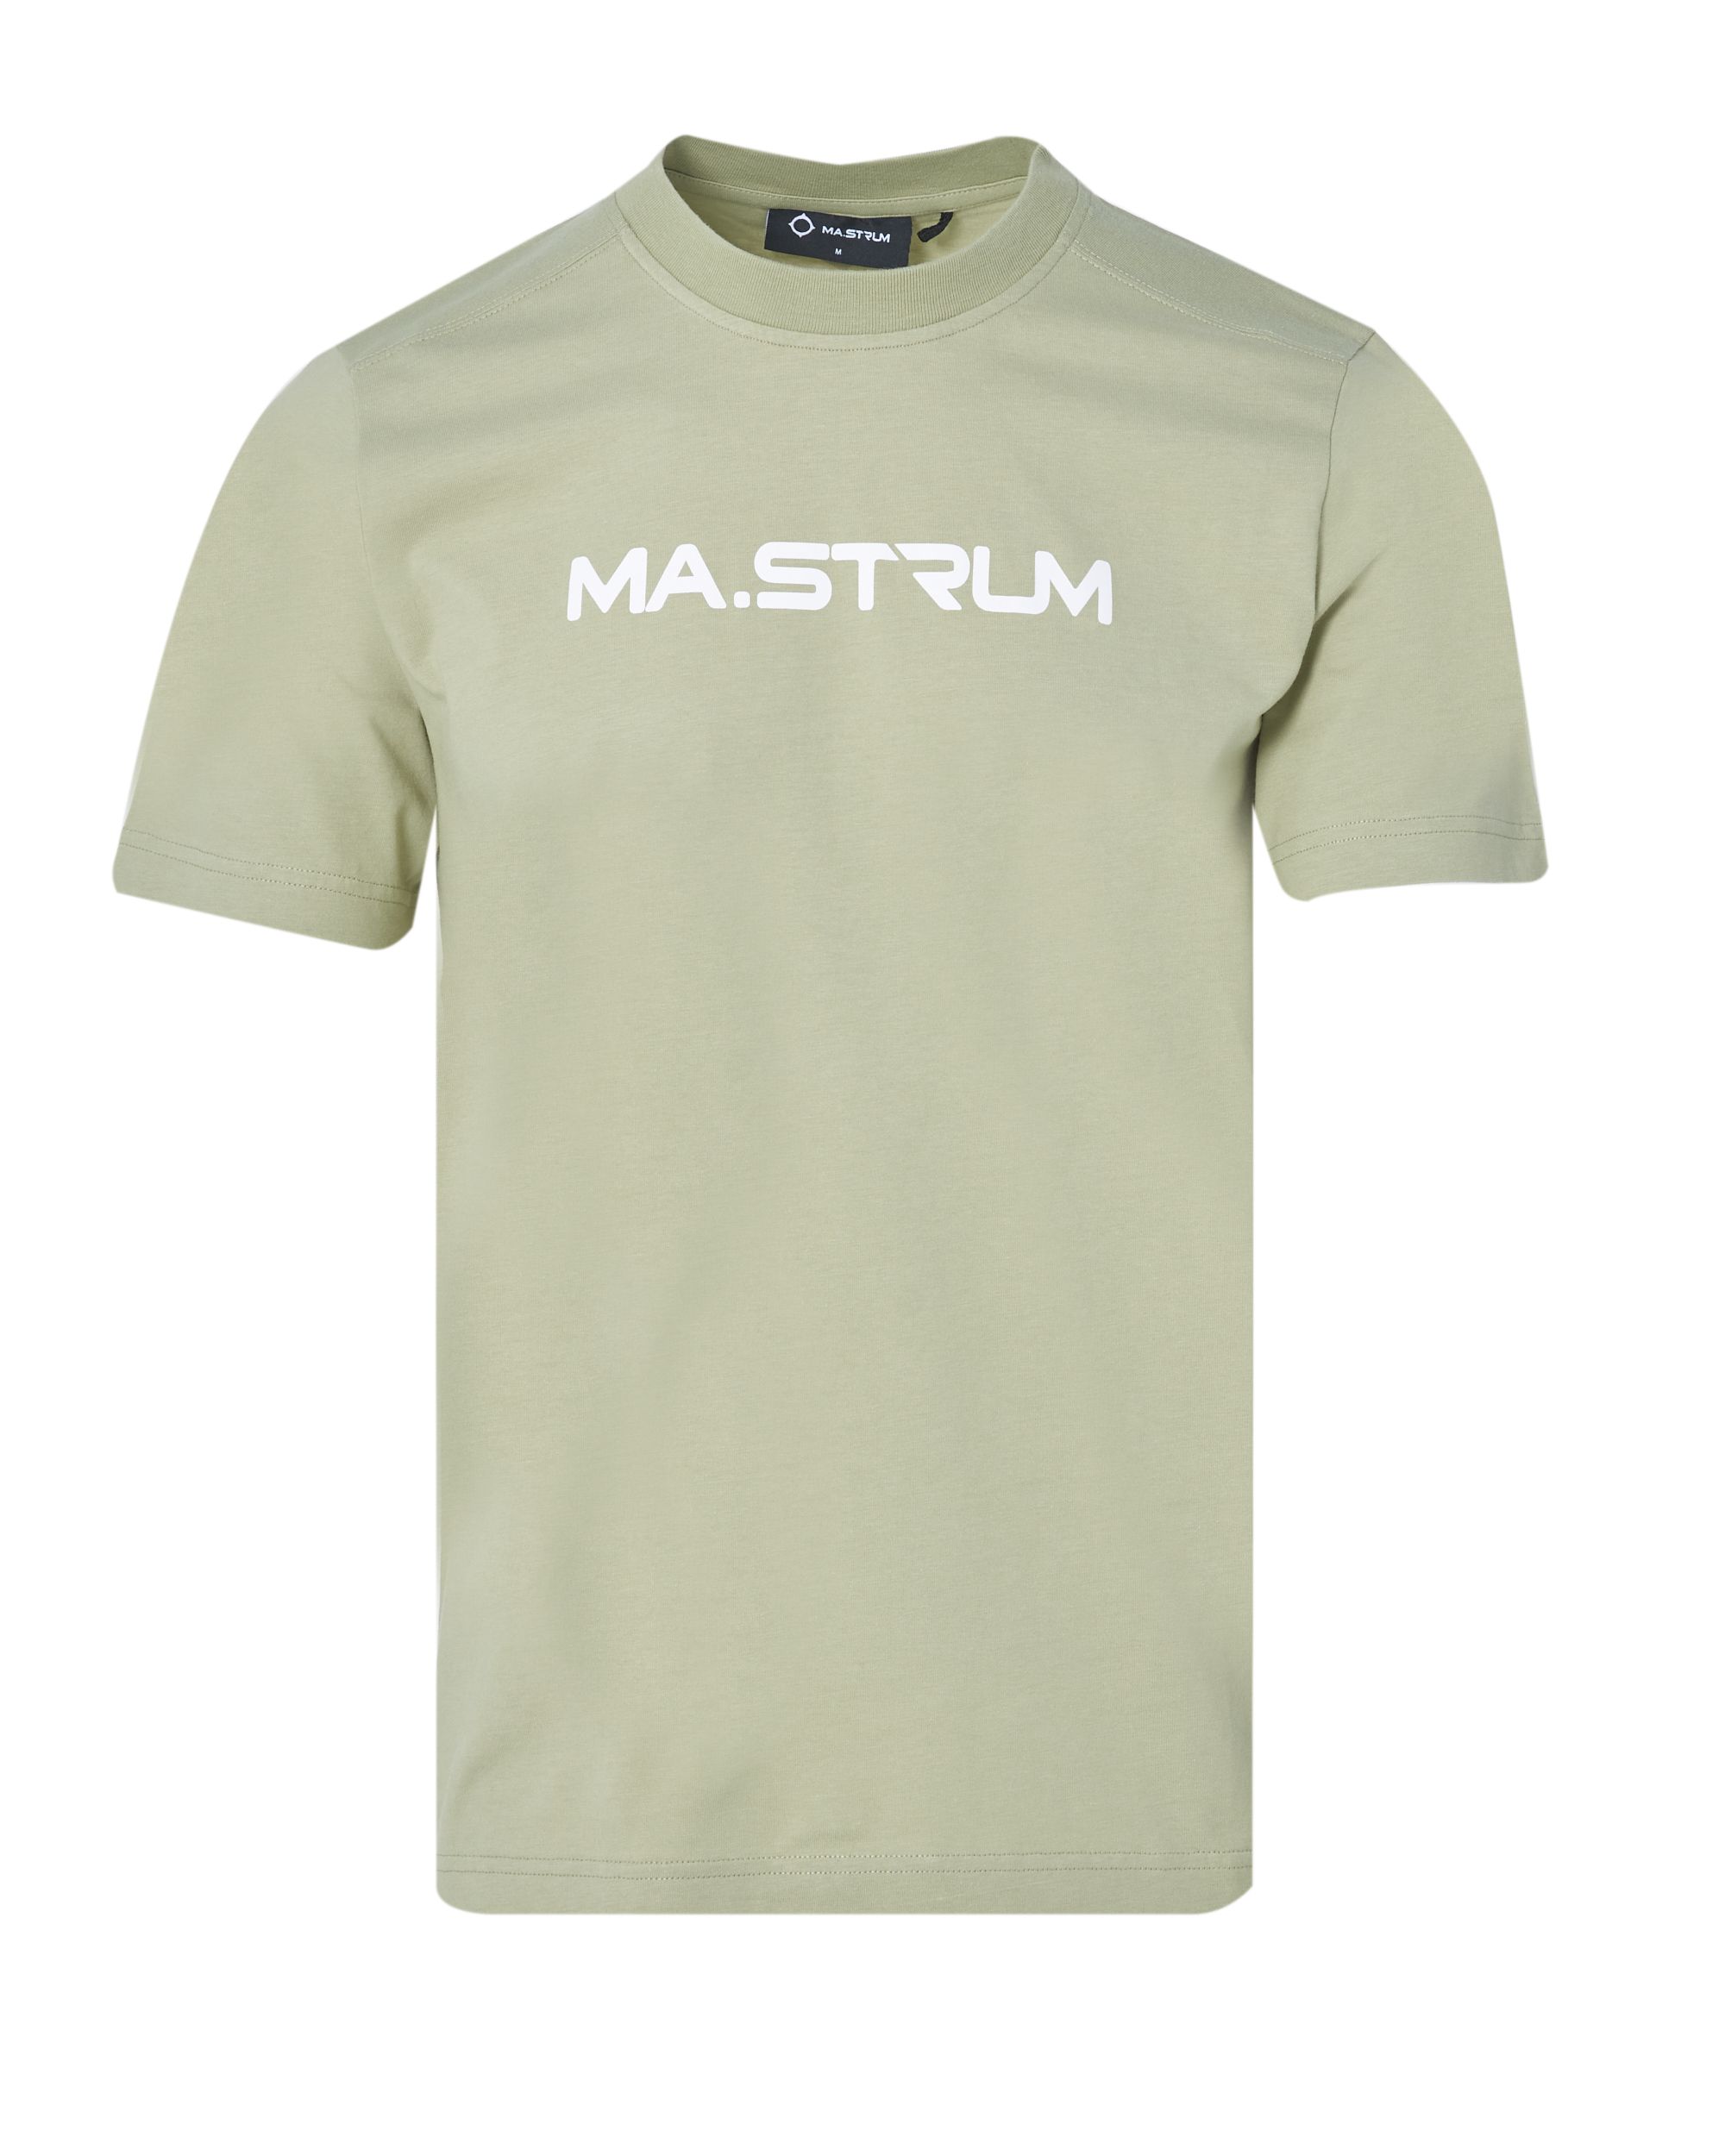 MA.STRUM T-shirt KM Licht groen 083679-001-L